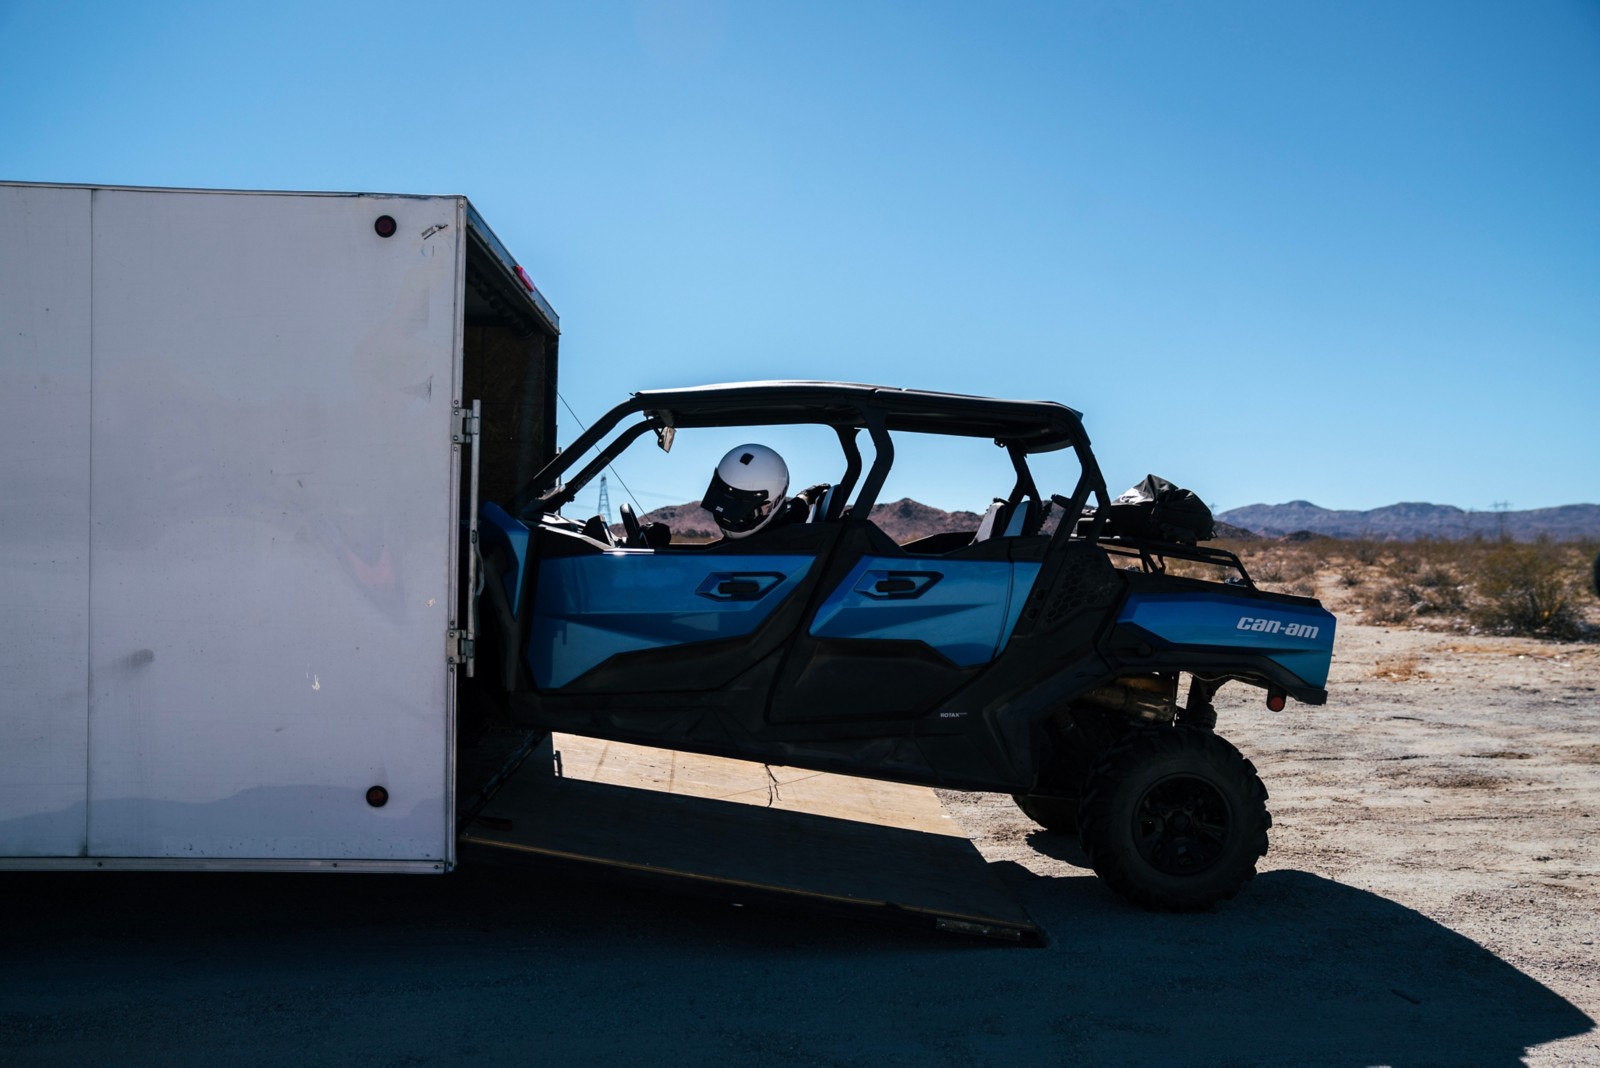 Carlos Naude conduciendo su Oxford Blue Can-Am Commander Max XT al estacionado en su remolque cubierto.